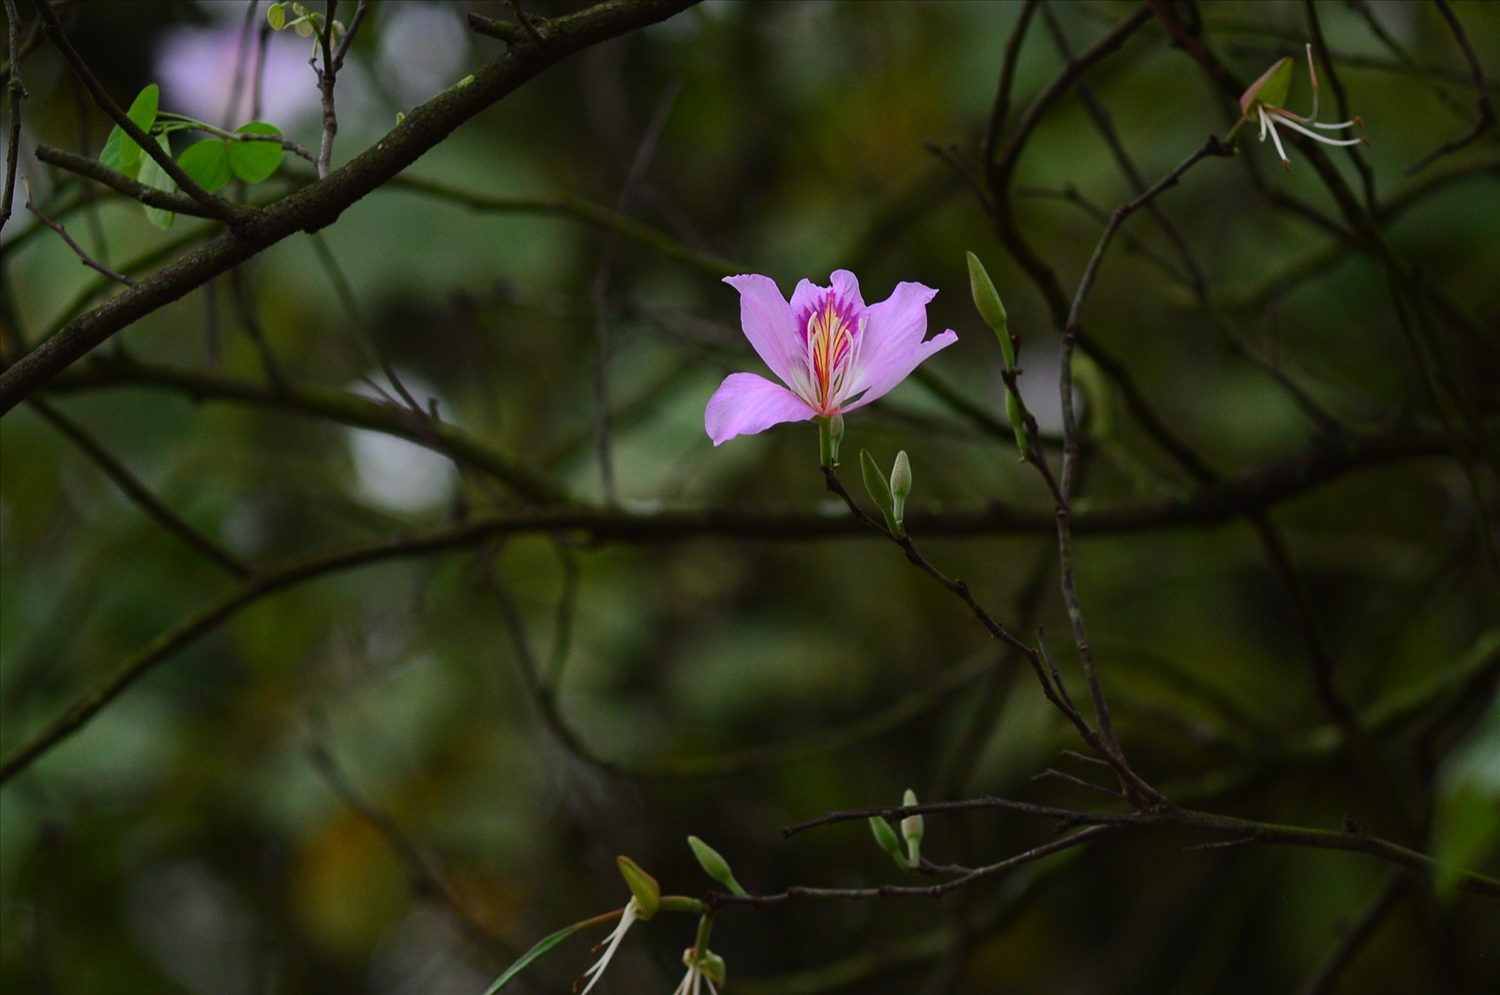 Bông hoa ban có 5 cánh, thường có màu trắng sọc hồng, tím, phớt tím và hồng. Hoa ban ở Hà Nội là hoa có màu tím hoặc phớt tím. Hoa không có hương thơm nhưng nhị có vị ngọt, người dân tộc Thái có món ăn truyền thống là nộm hoa ban.